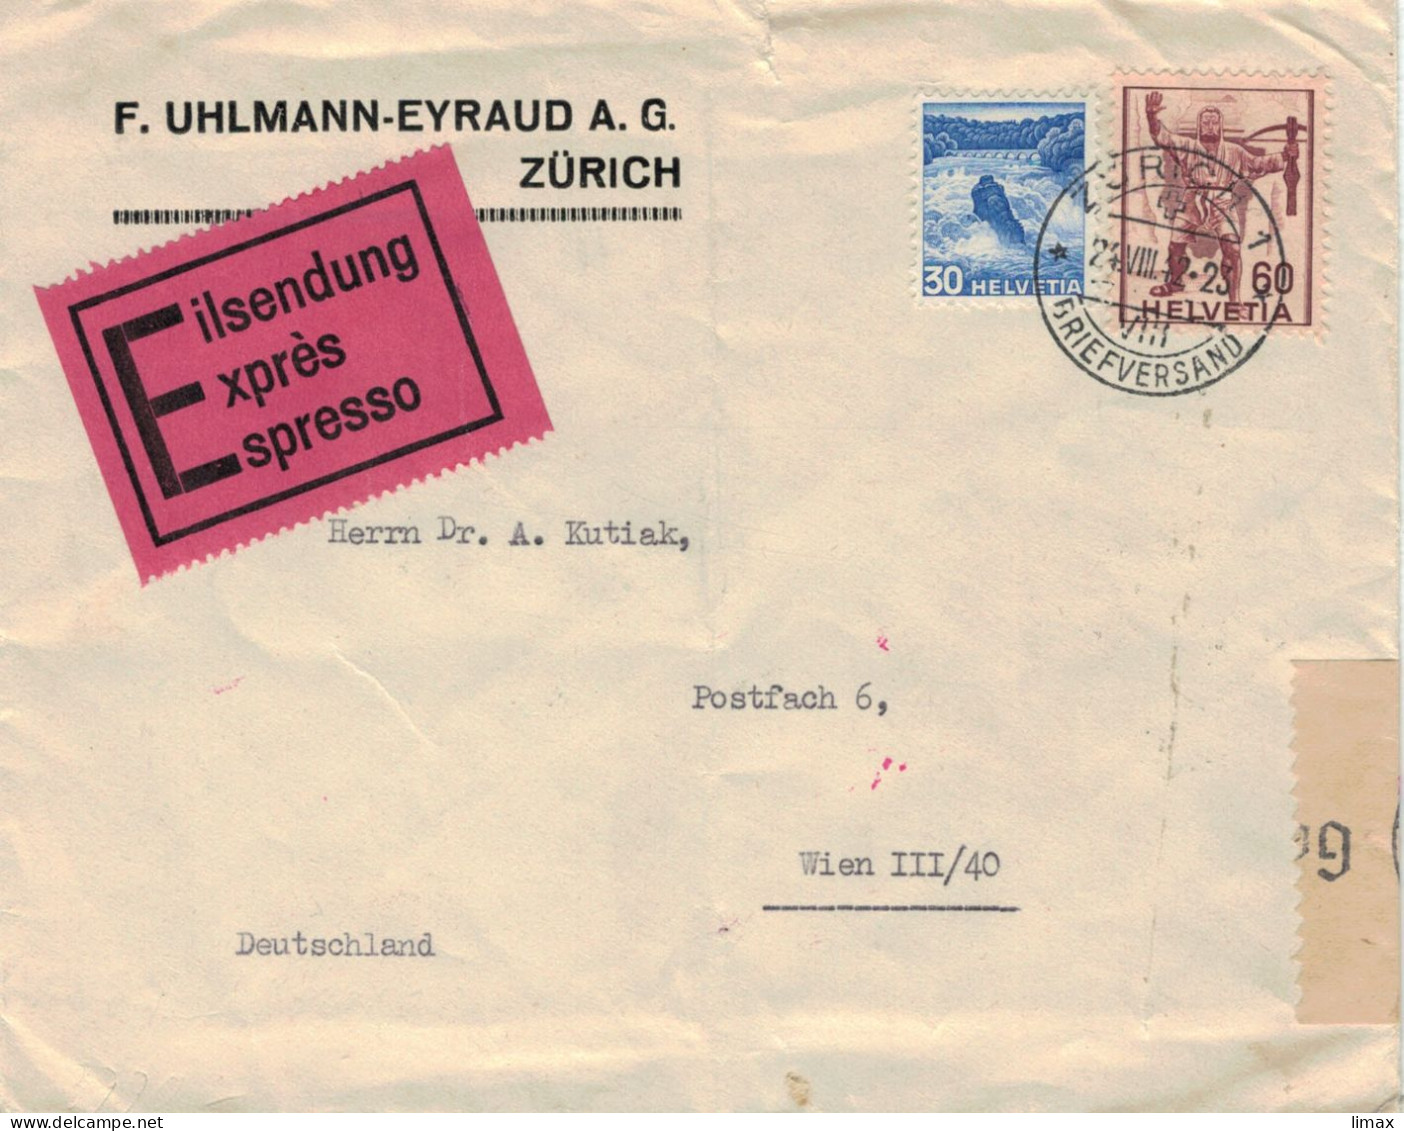 Uhlmann-Eyraud Zürich Briefversand 1942 > Dr. Kutiak Wien - Zensur OKW - Rheinfall Armbrust-Schütze Eilsendung - Briefe U. Dokumente